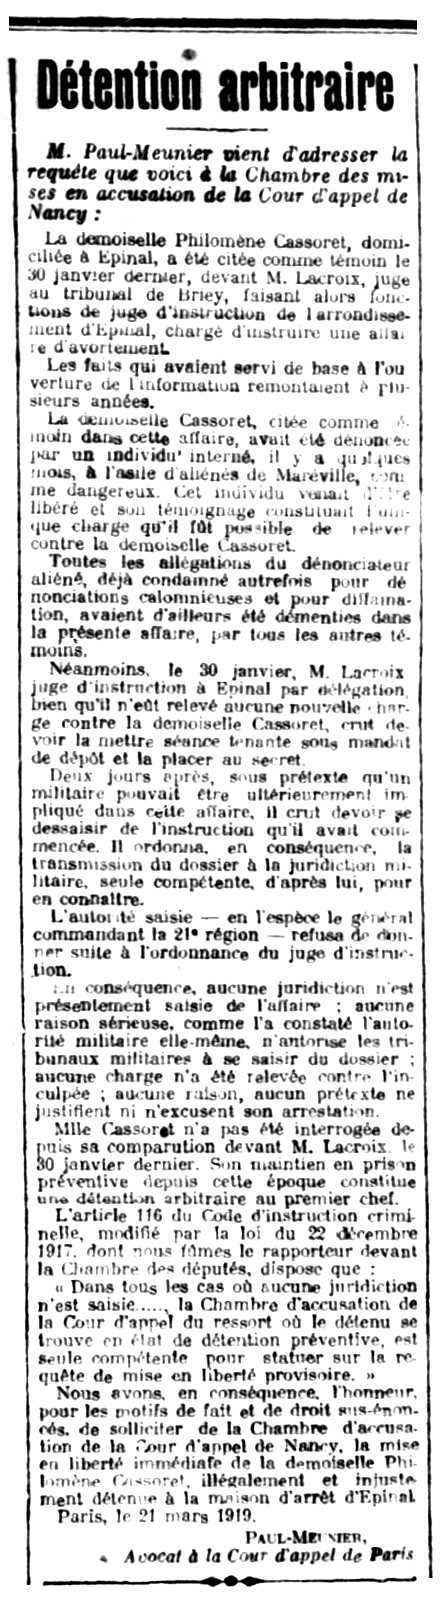 Notícia de l'empresonament de Philomène Cassoret apareguda en el diari parisenc "La Verité" del 29 de març de 1919